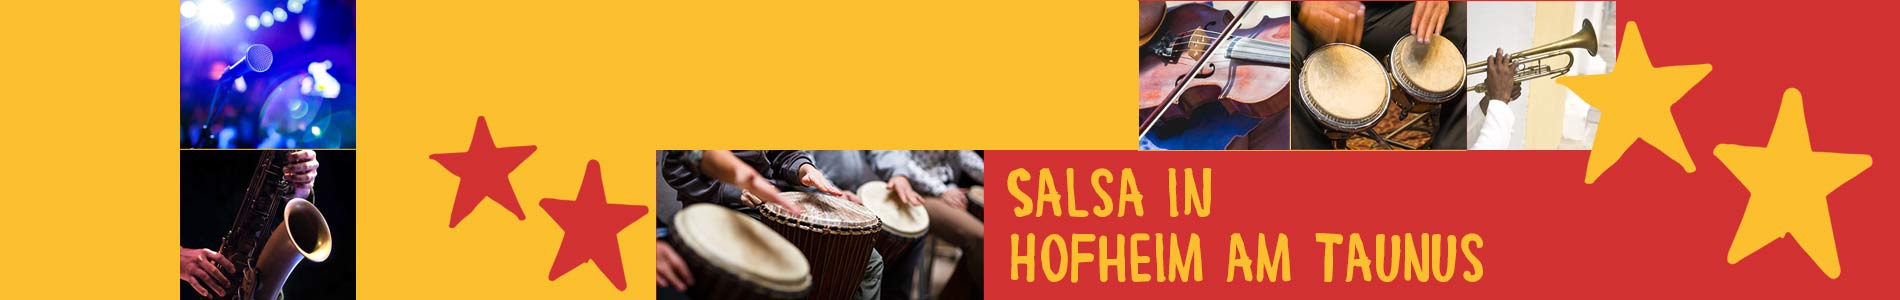 Salsa in Hofheim am Taunus – Salsa lernen und tanzen, Tanzkurse, Partys, Veranstaltungen